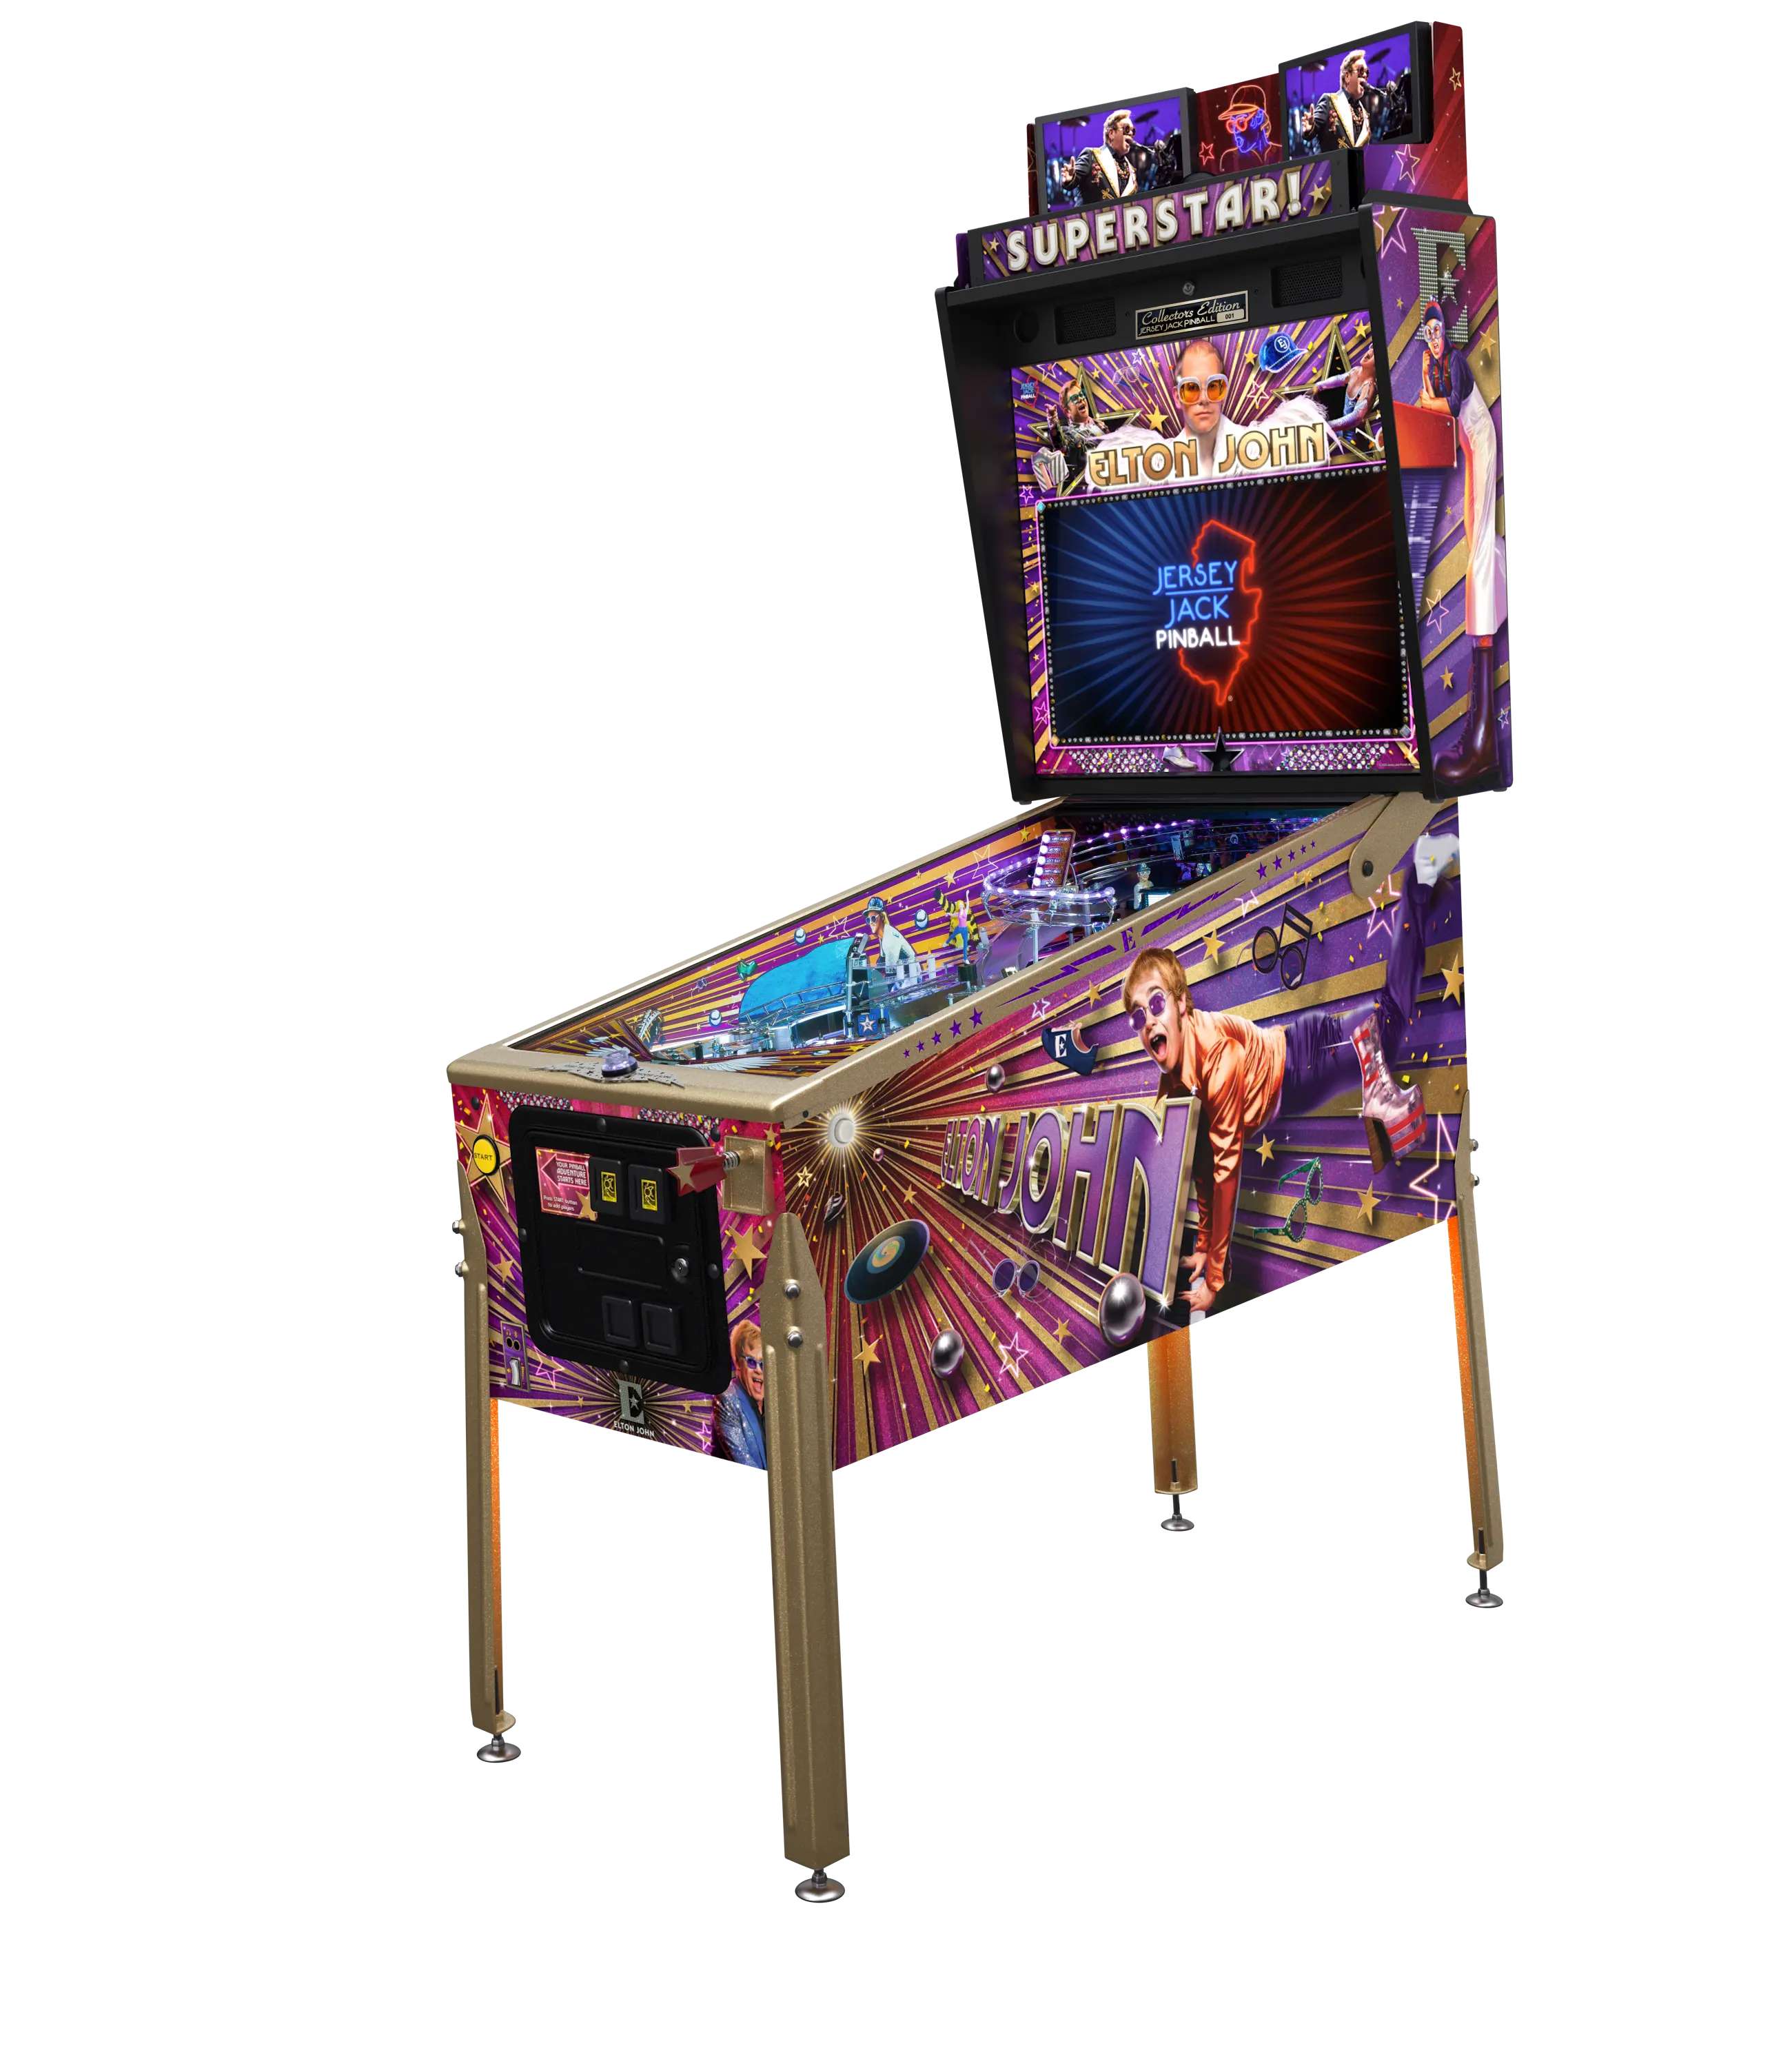 Jersey Jack Elton John Pinball Machine - Collectors Edition Jeux d'arcade de flipper avec Wi-Fi activé et audio Bluetooth